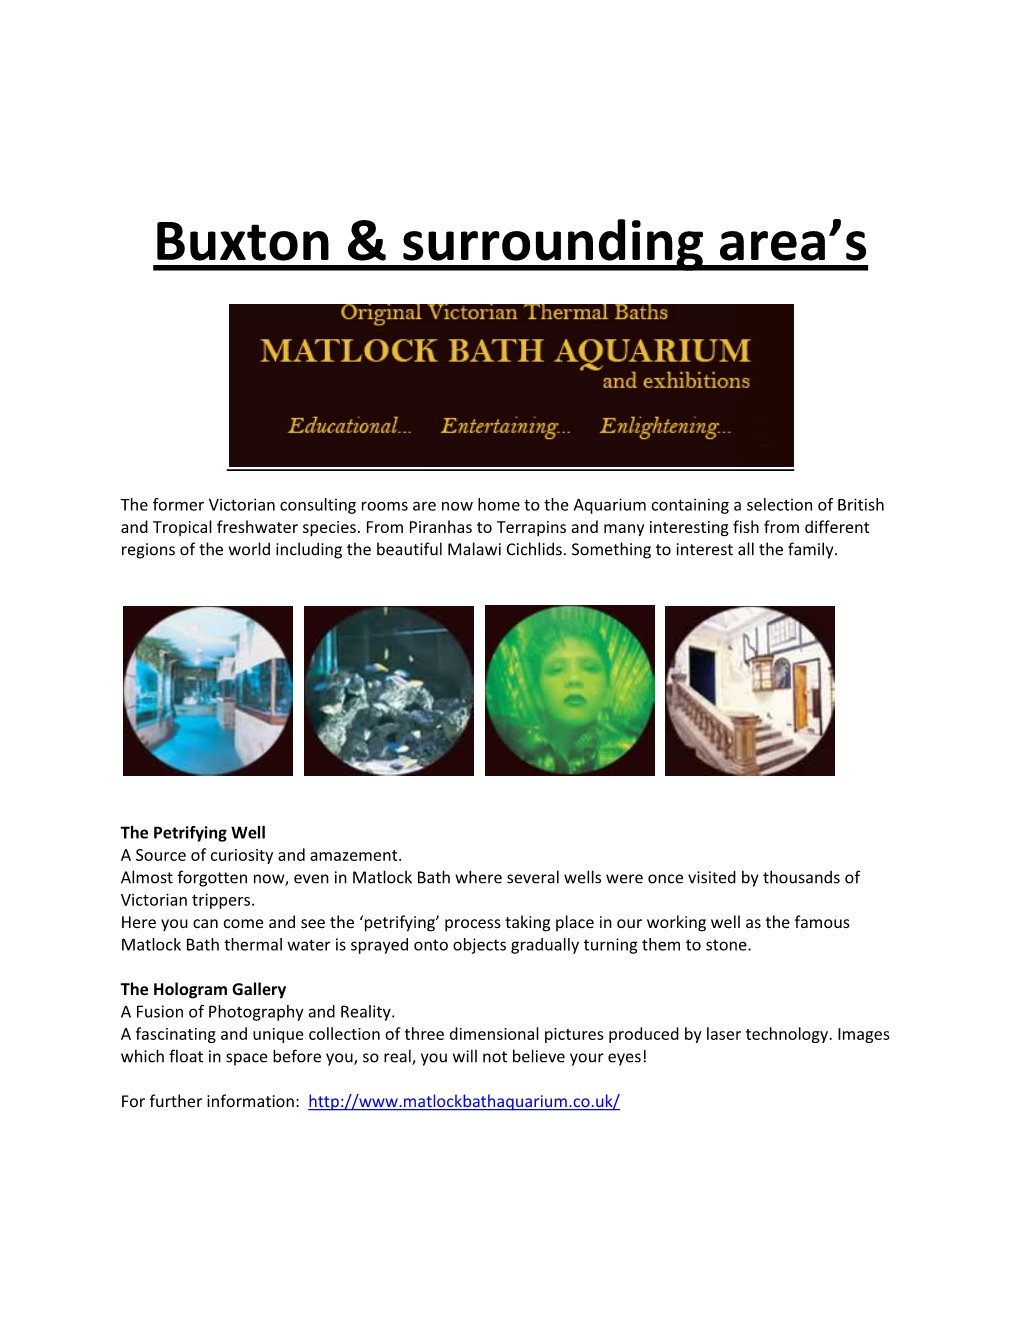 Buxton/Matlock